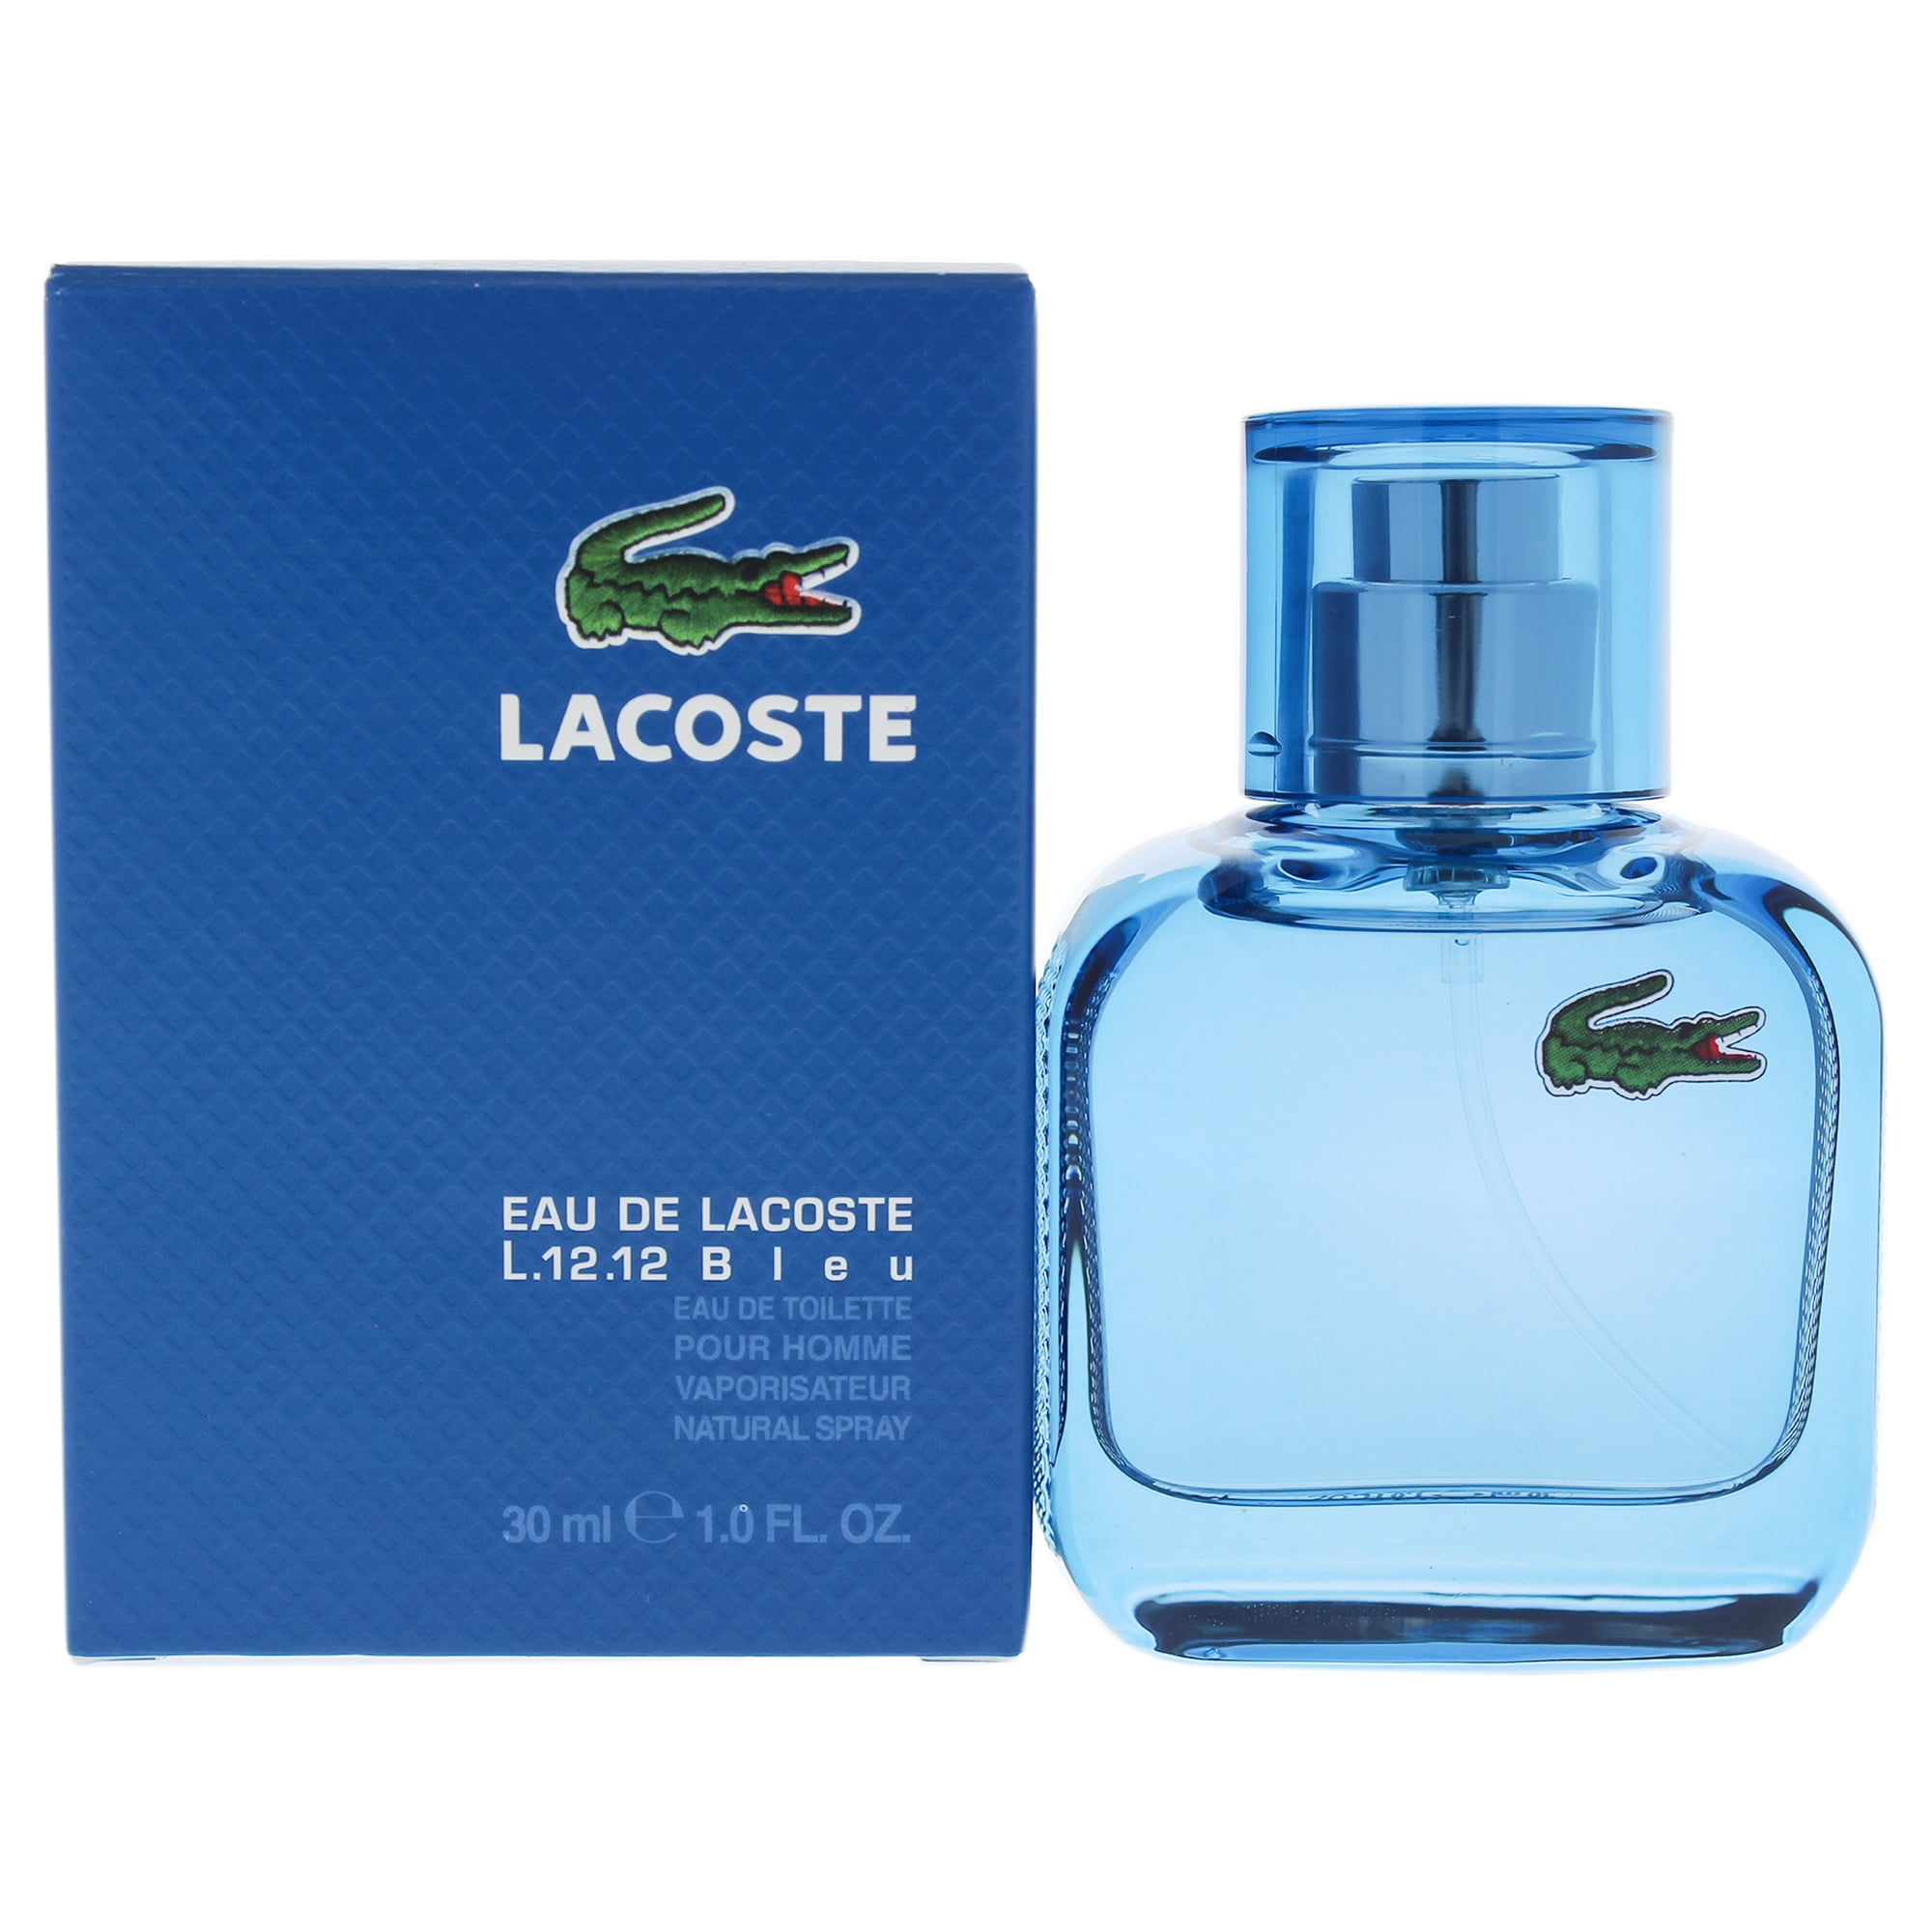 Lacoste Eau DE Lacoste L.12.12 Bleu by Lacoste for Men - 1 oz EDT Spray ...